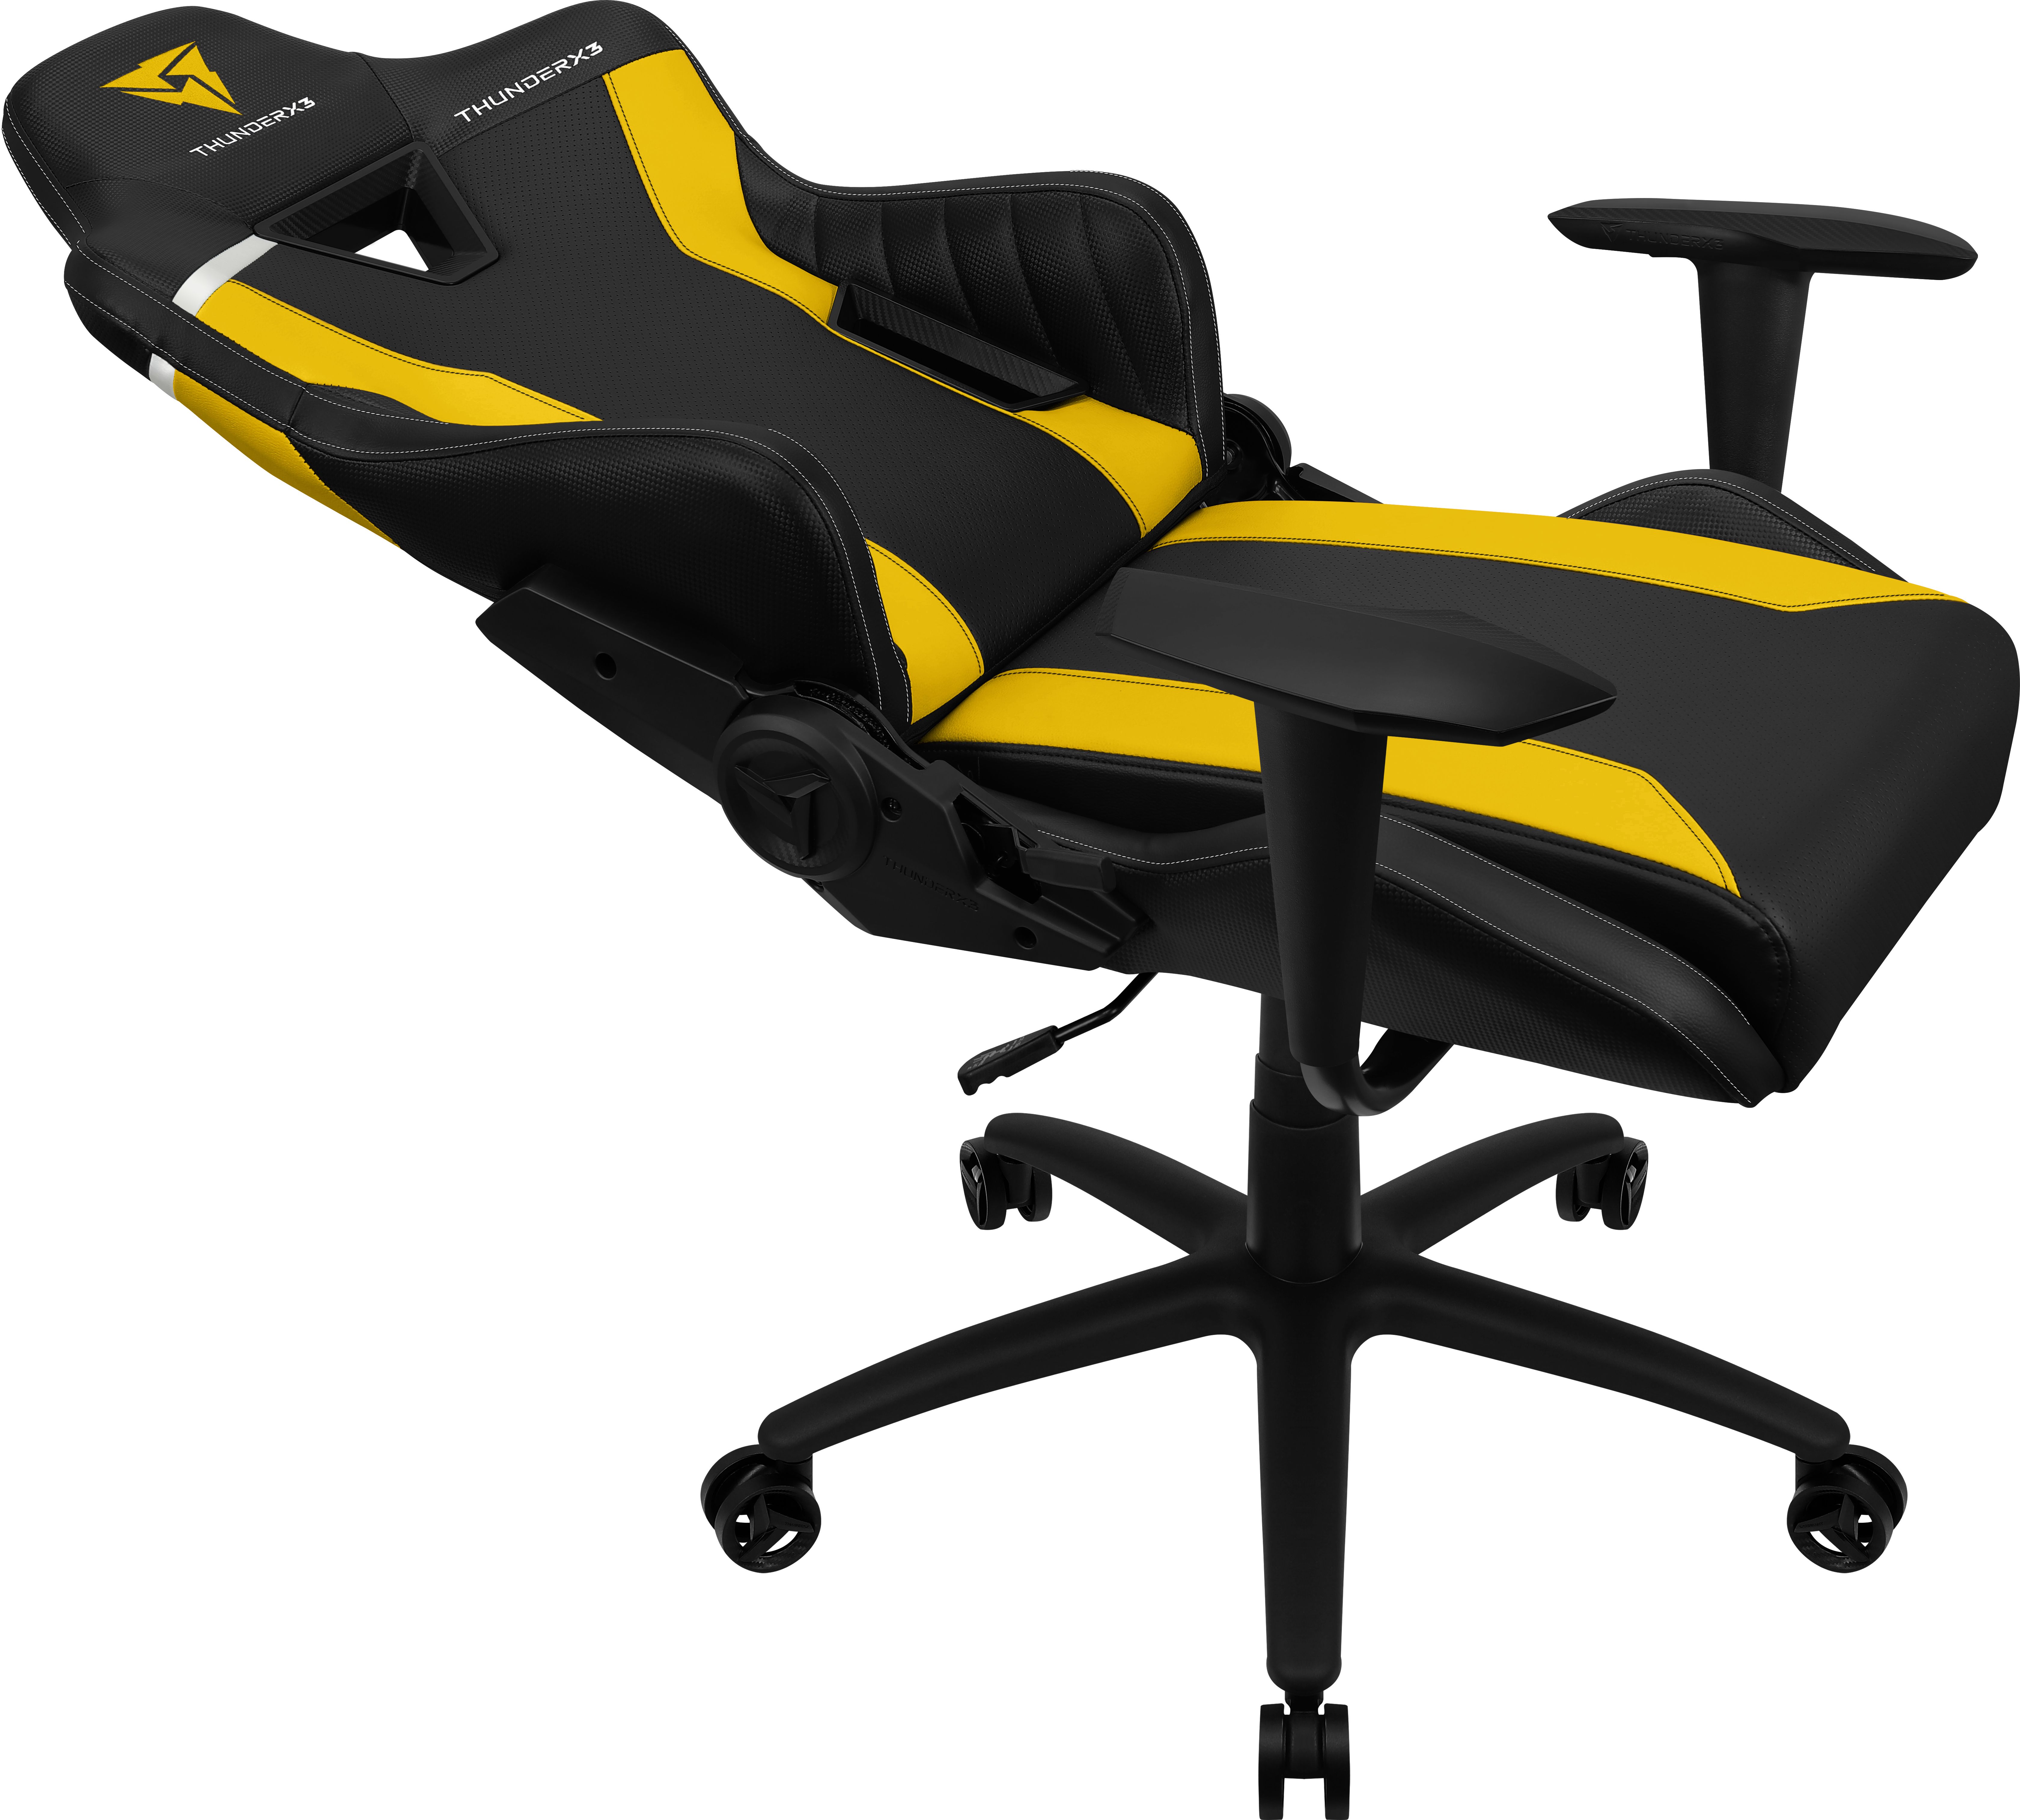 Thunder X3 TC3 Gaming Chair - black/yellow